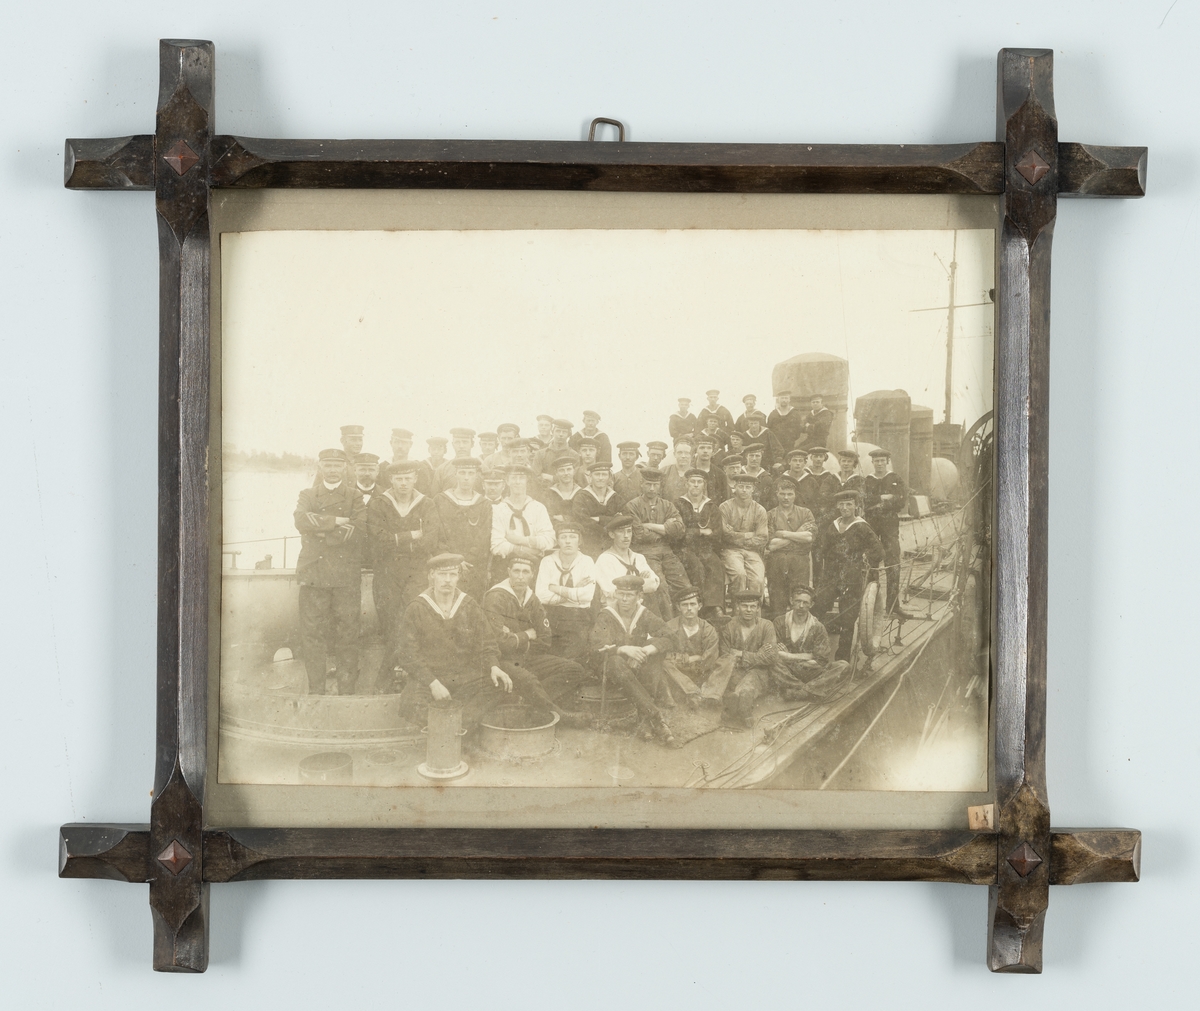 Bilden visar jagaren Ragnars besättning som har samlats på däck för en gruppfoto vintern 1912